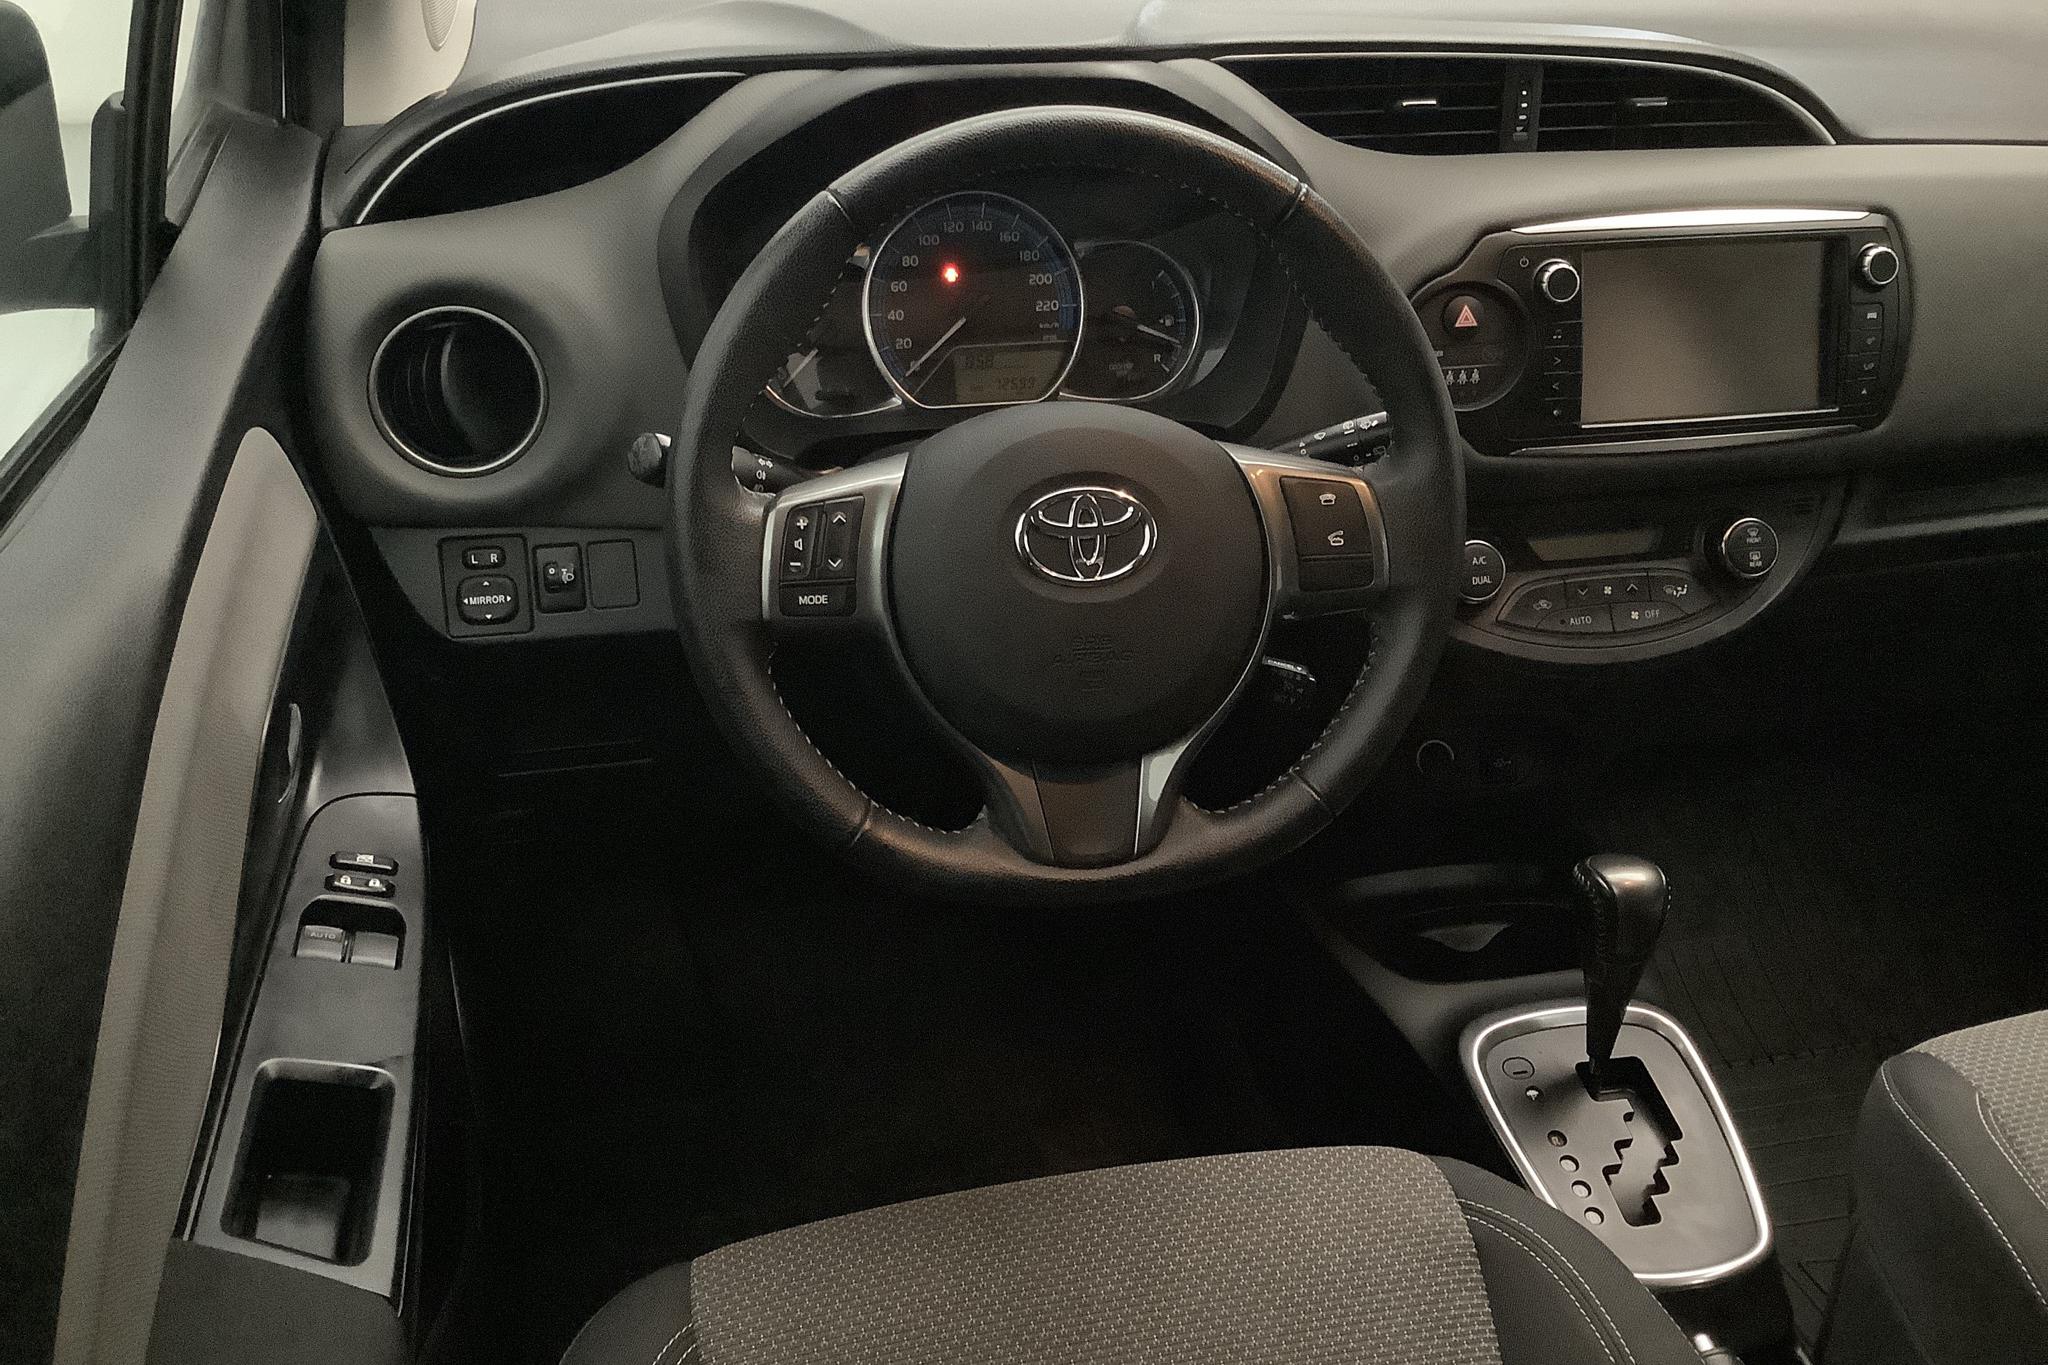 Toyota Yaris 1.5 HSD 5dr (75hk) - 72 590 km - Automatic - white - 2015